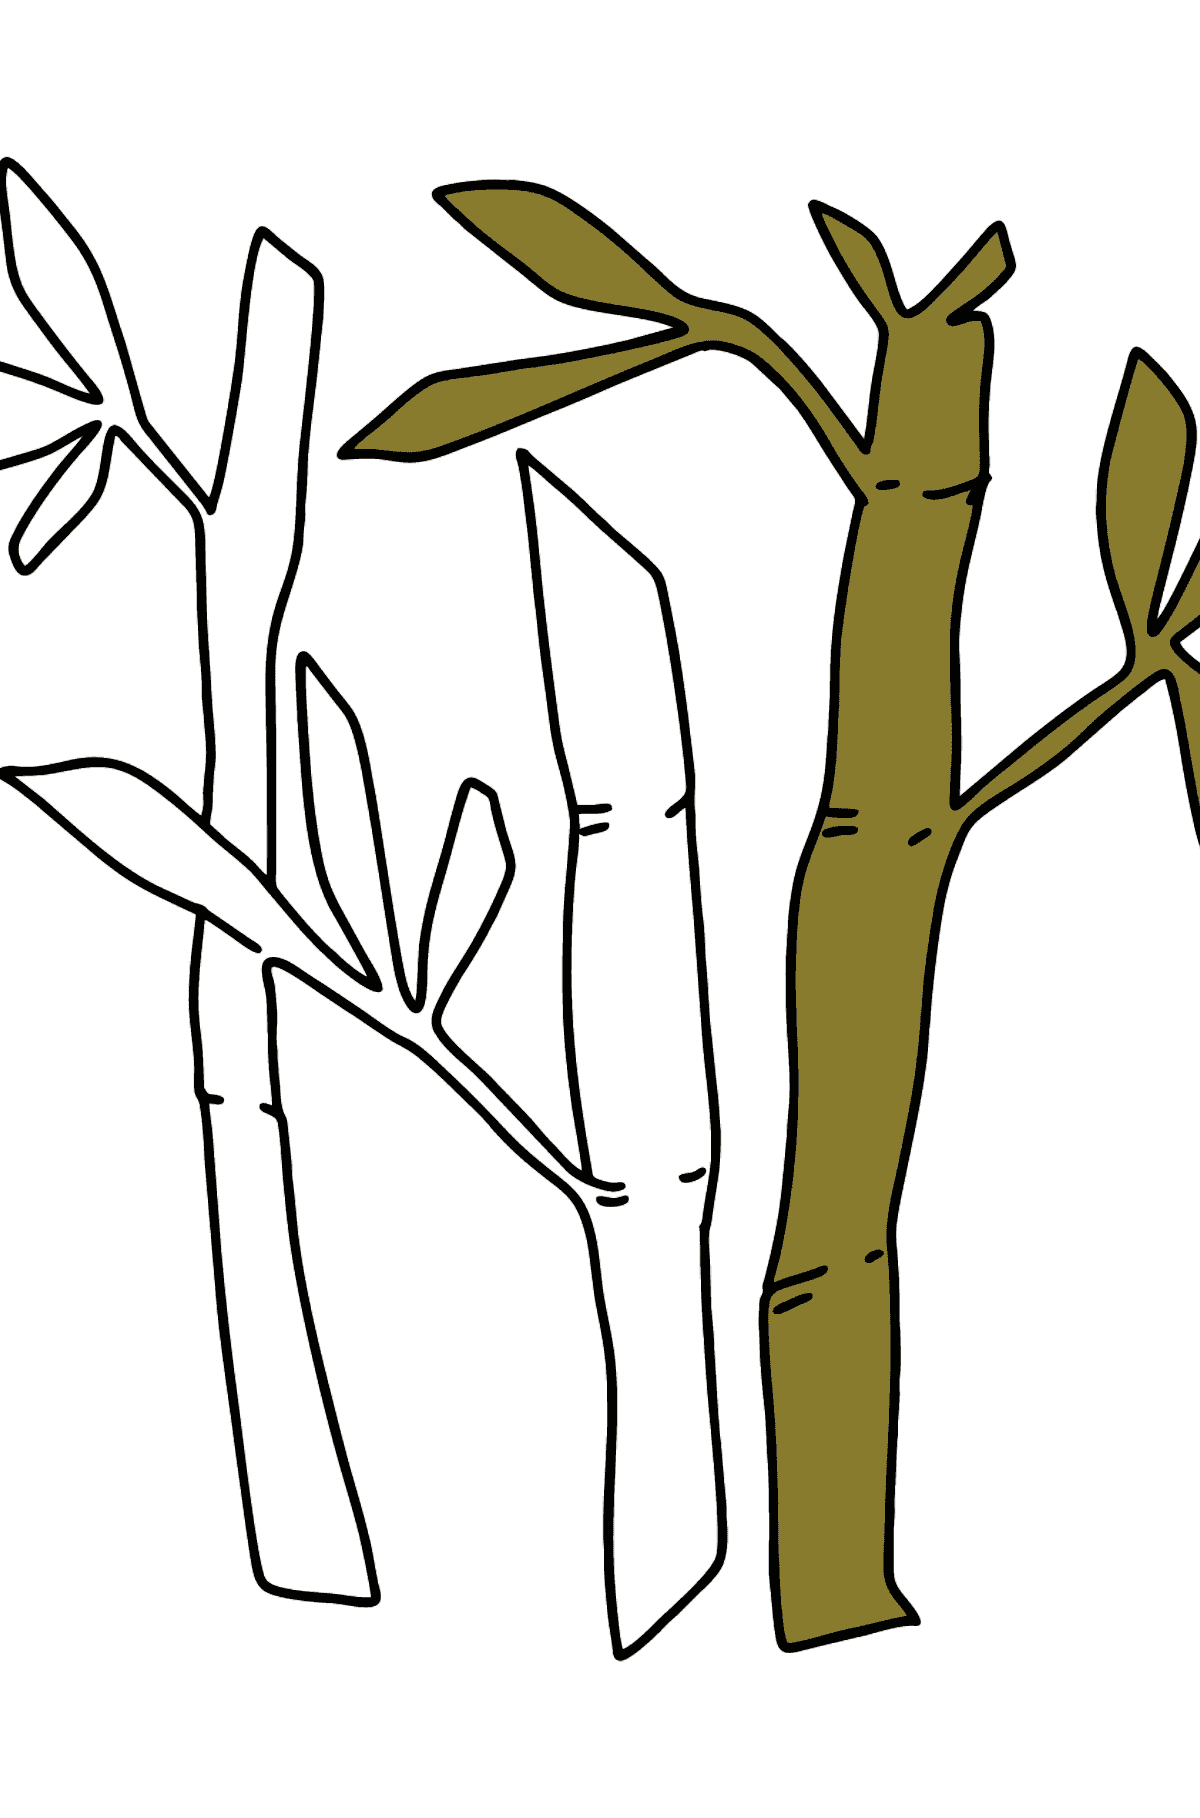 Раскраска бамбук просто - Картинки для Детей